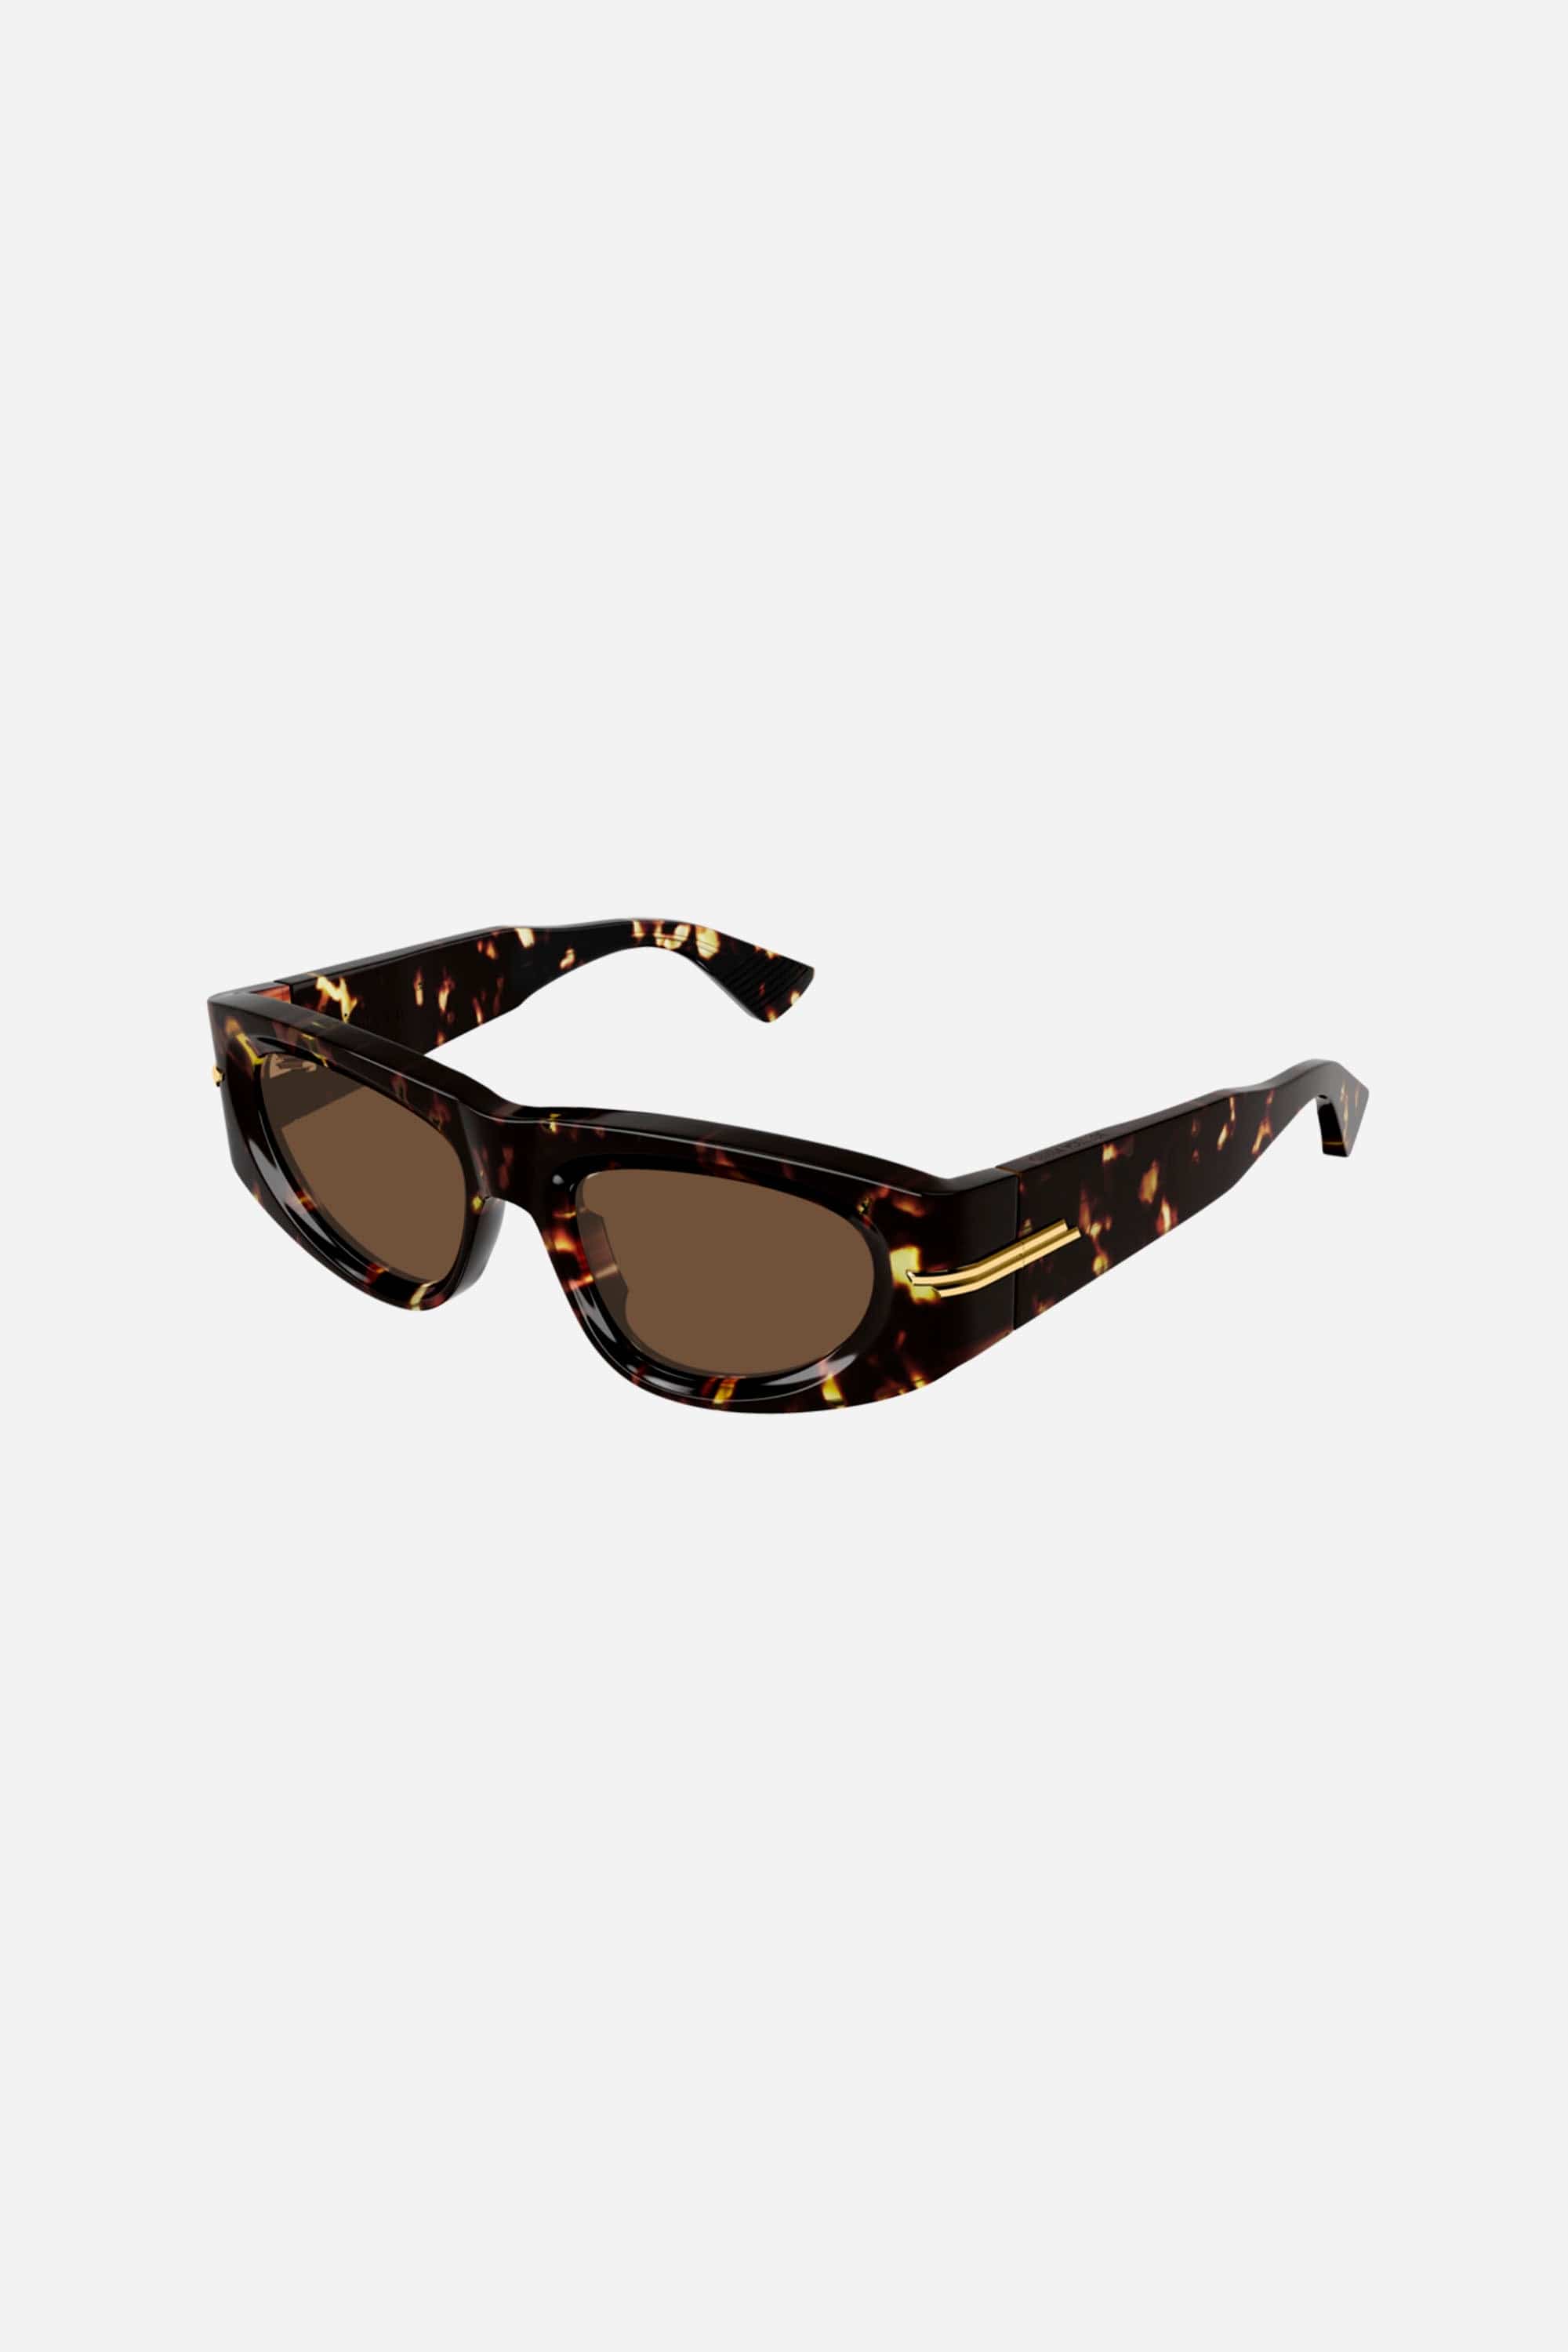 Bottega Veneta havana rectangular sunglasses - Eyewear Club